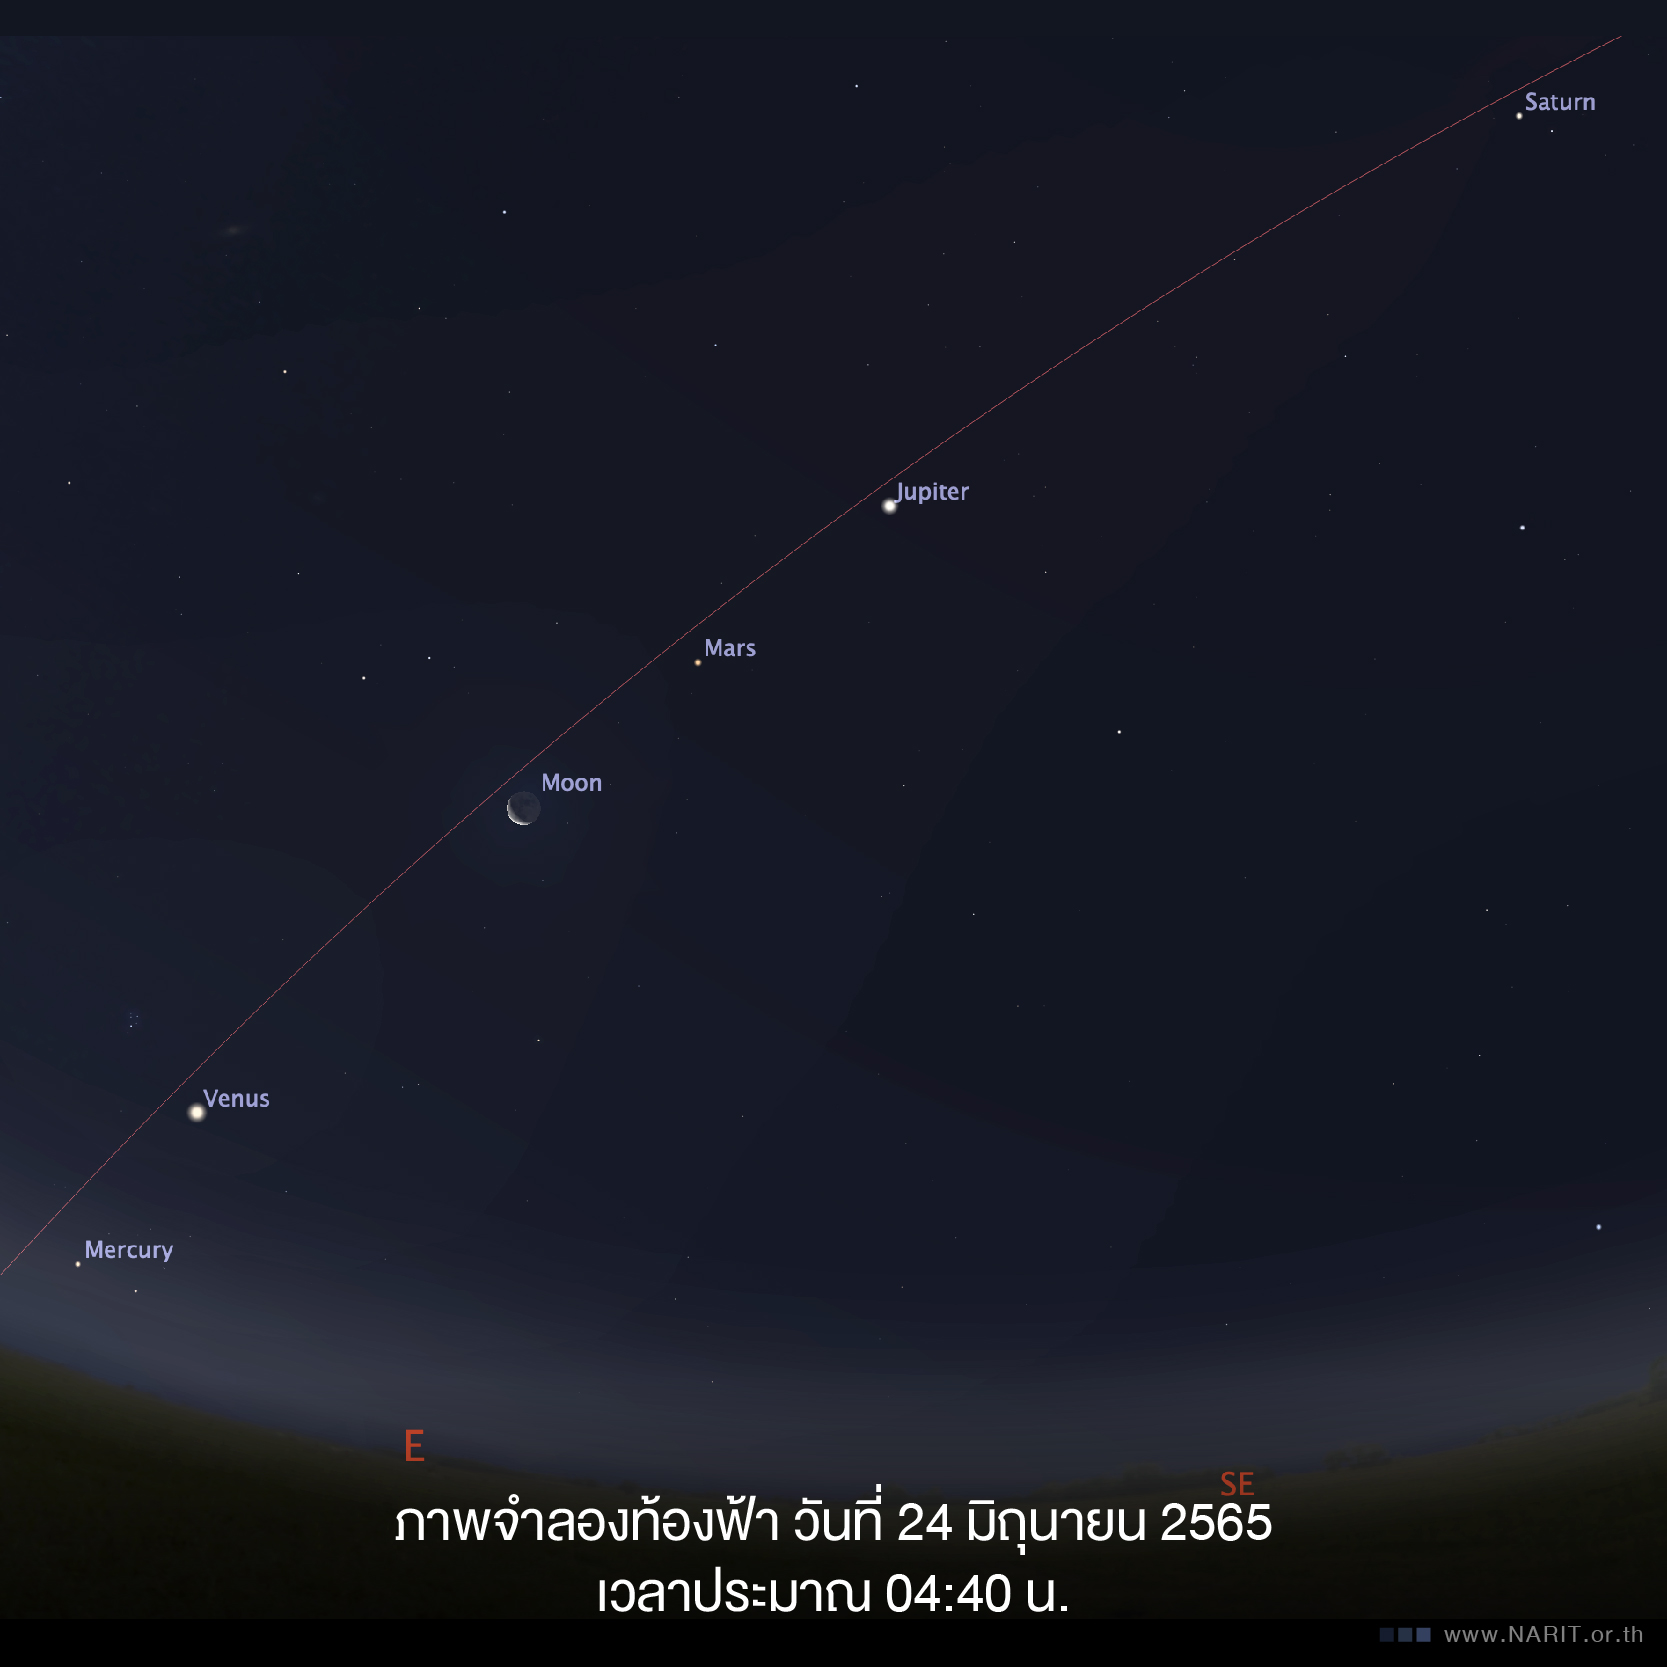 24-25 มิถุนายนนี้ ชวนชมพาเหรดดาวเคราะห์ 5 ดวง ก่อนรุ่งเช้า